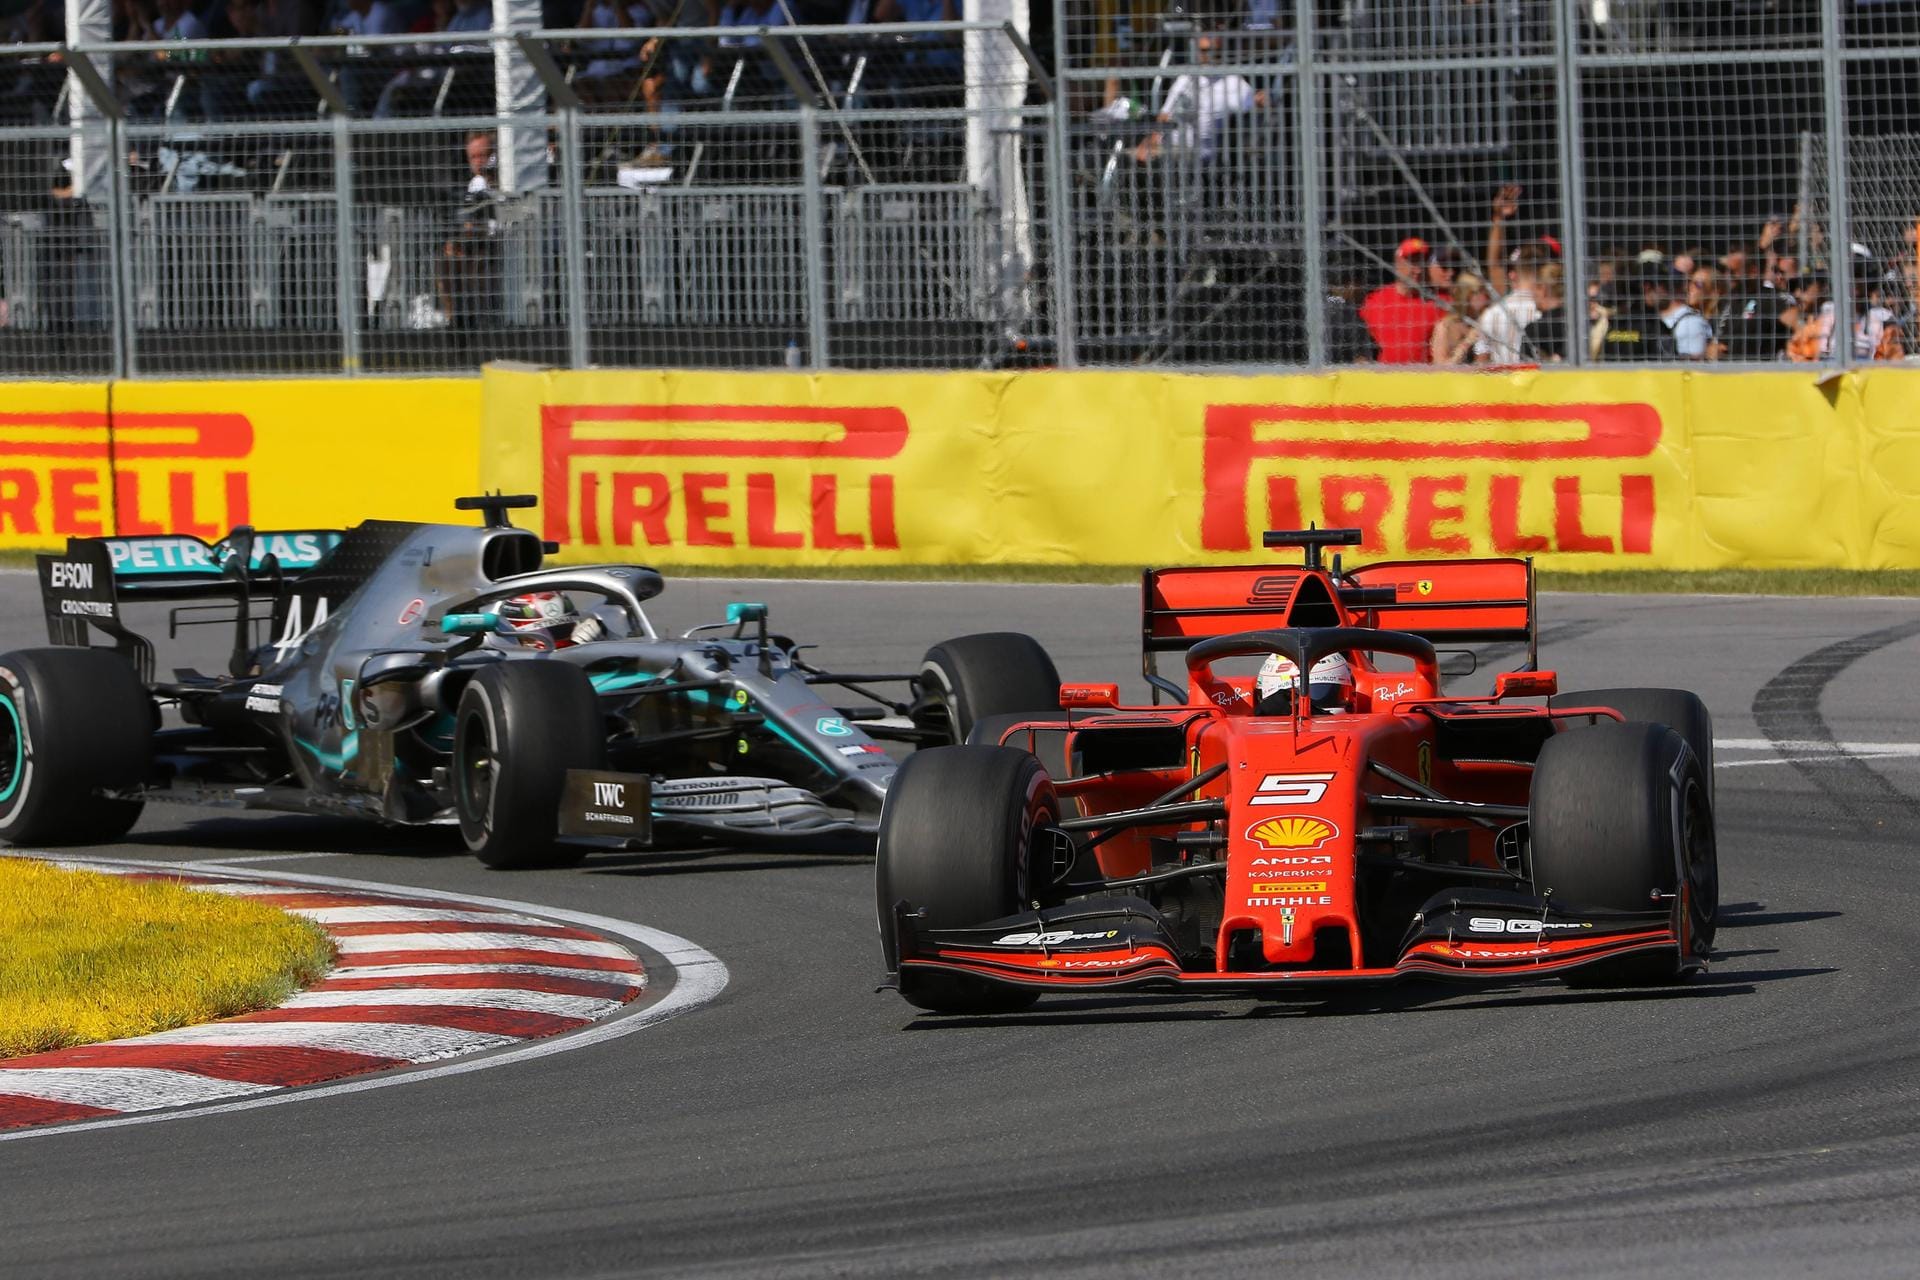 Sun: "Ein tobender Vettel wirft den Stewards vor, ihn bestohlen zu haben. Der Deutsche bekommt einen Wutanfall, als Hamilton den geschenkten Sieg feiert. Was Hamilton und Vettel auf der Strecke gezeigt haben, war doch genau das, was die Formel 1 immer wollte: Zwei der besten Fahrer ihrer Generation in einem engen Zweikampf um den Sieg. Schade, dass diese Dramaturgie am grünen Tisch zerstört wurde."